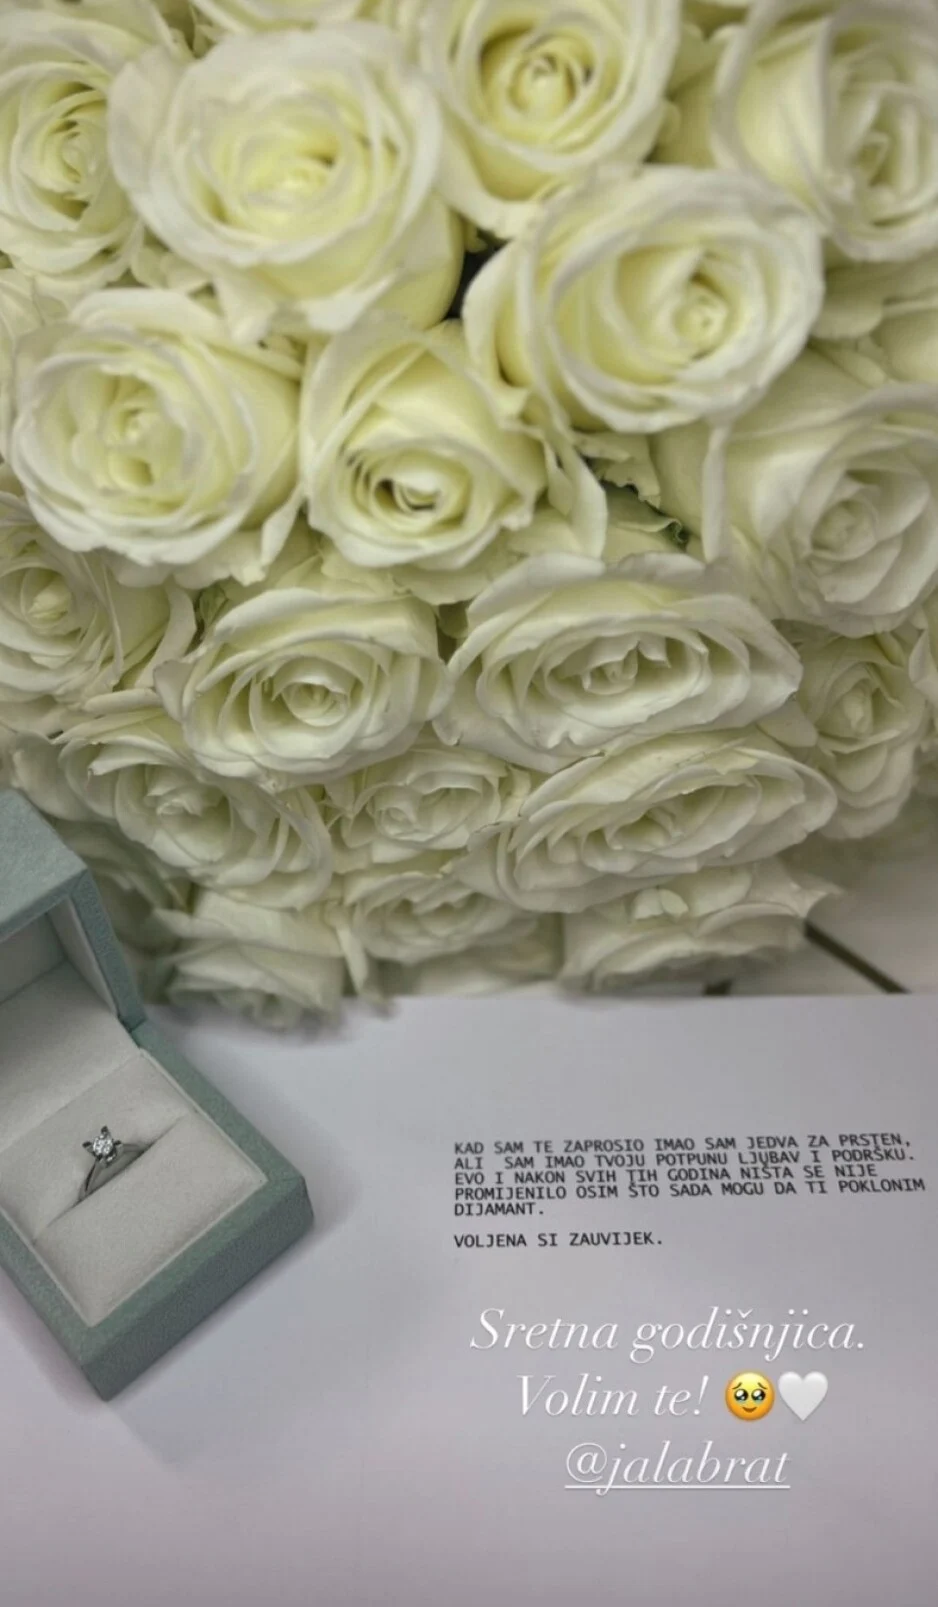 Jala Brat poklonio supruzi dijamant za godišnjicu braka: Kada sam te zaprosio, jedva sam imao za prsten